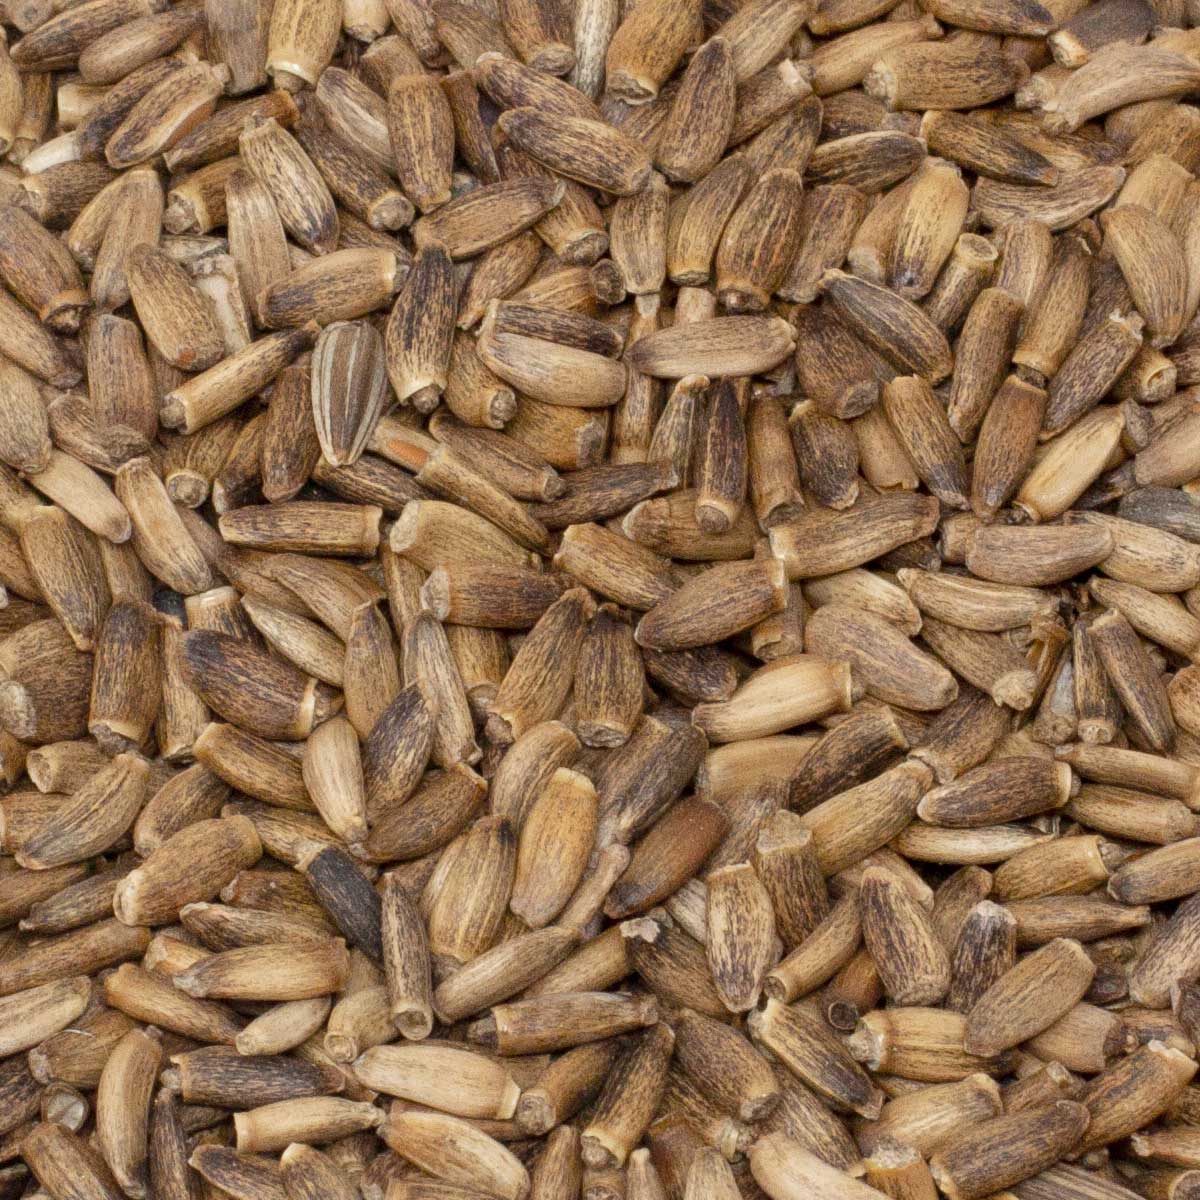 Leimüller semințe de ciulin 2 kg